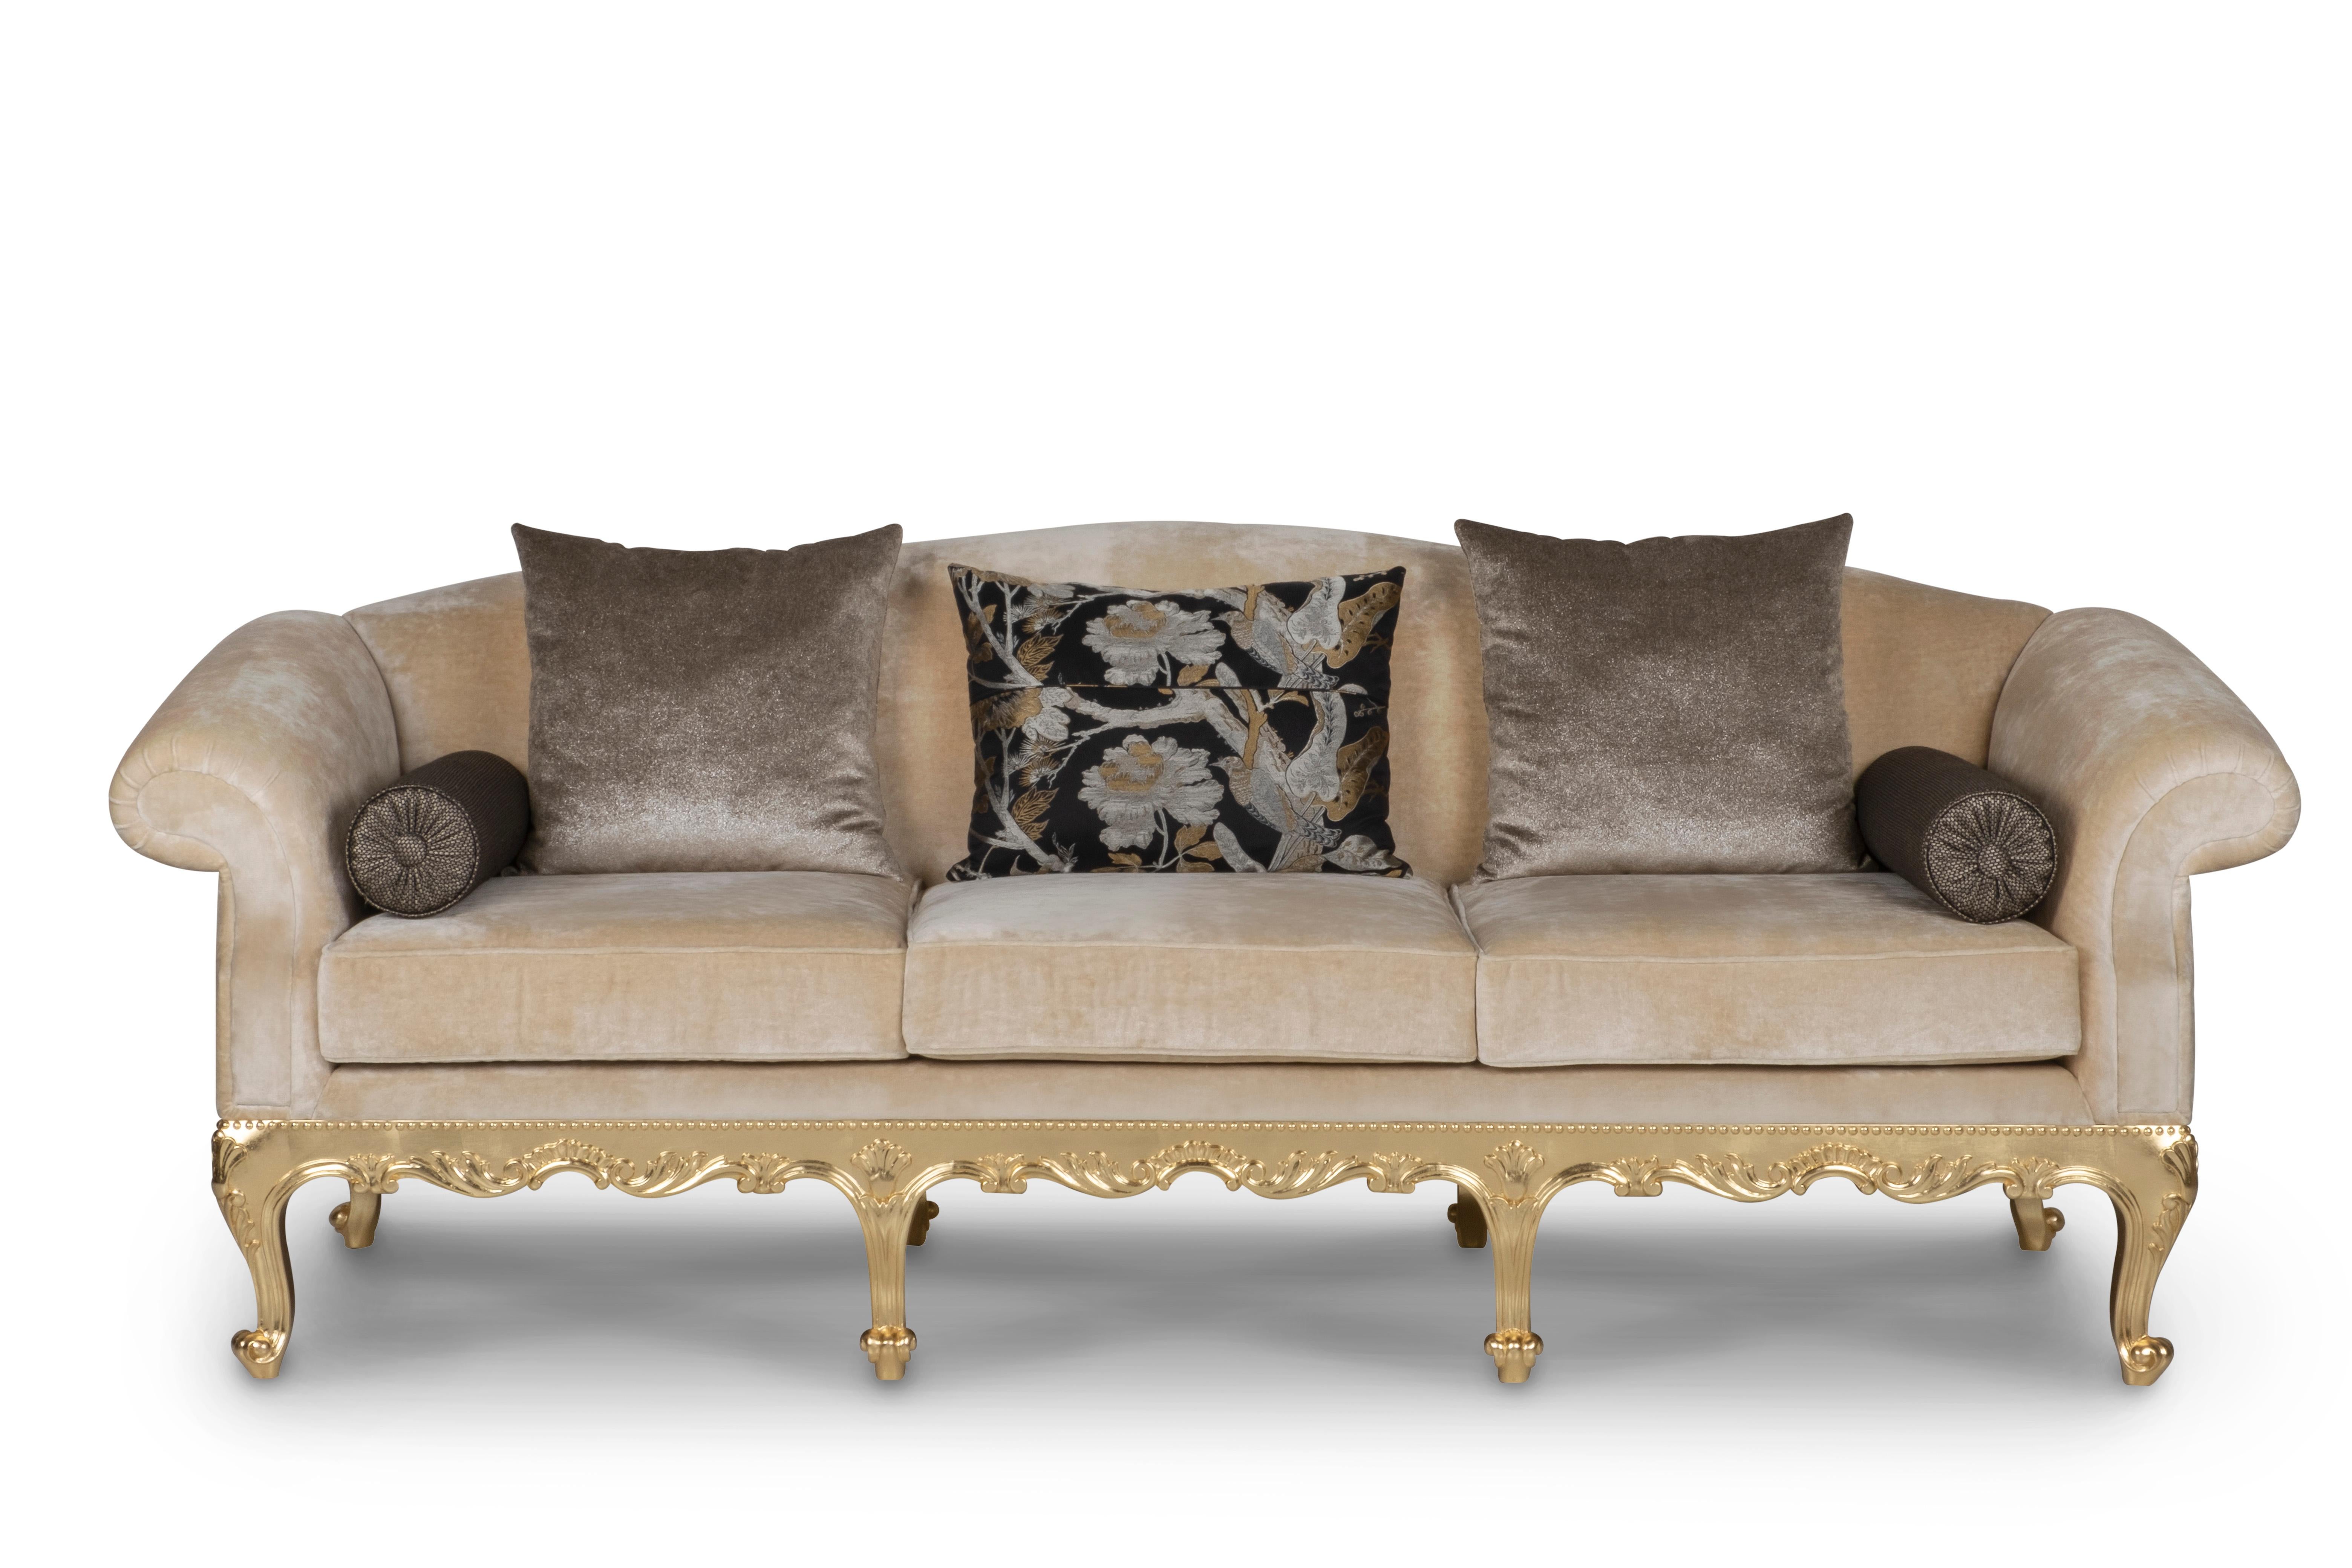 Canapé Dormeuse, Collection Neoclassical, fabriqué à la main au Portugal - Europe par GF Modern.

Le canapé Dormeuse apporte une touche sophistiquée et raffinée à tout espace de vie. Le canapé est recouvert de velours bronze et beige avec des